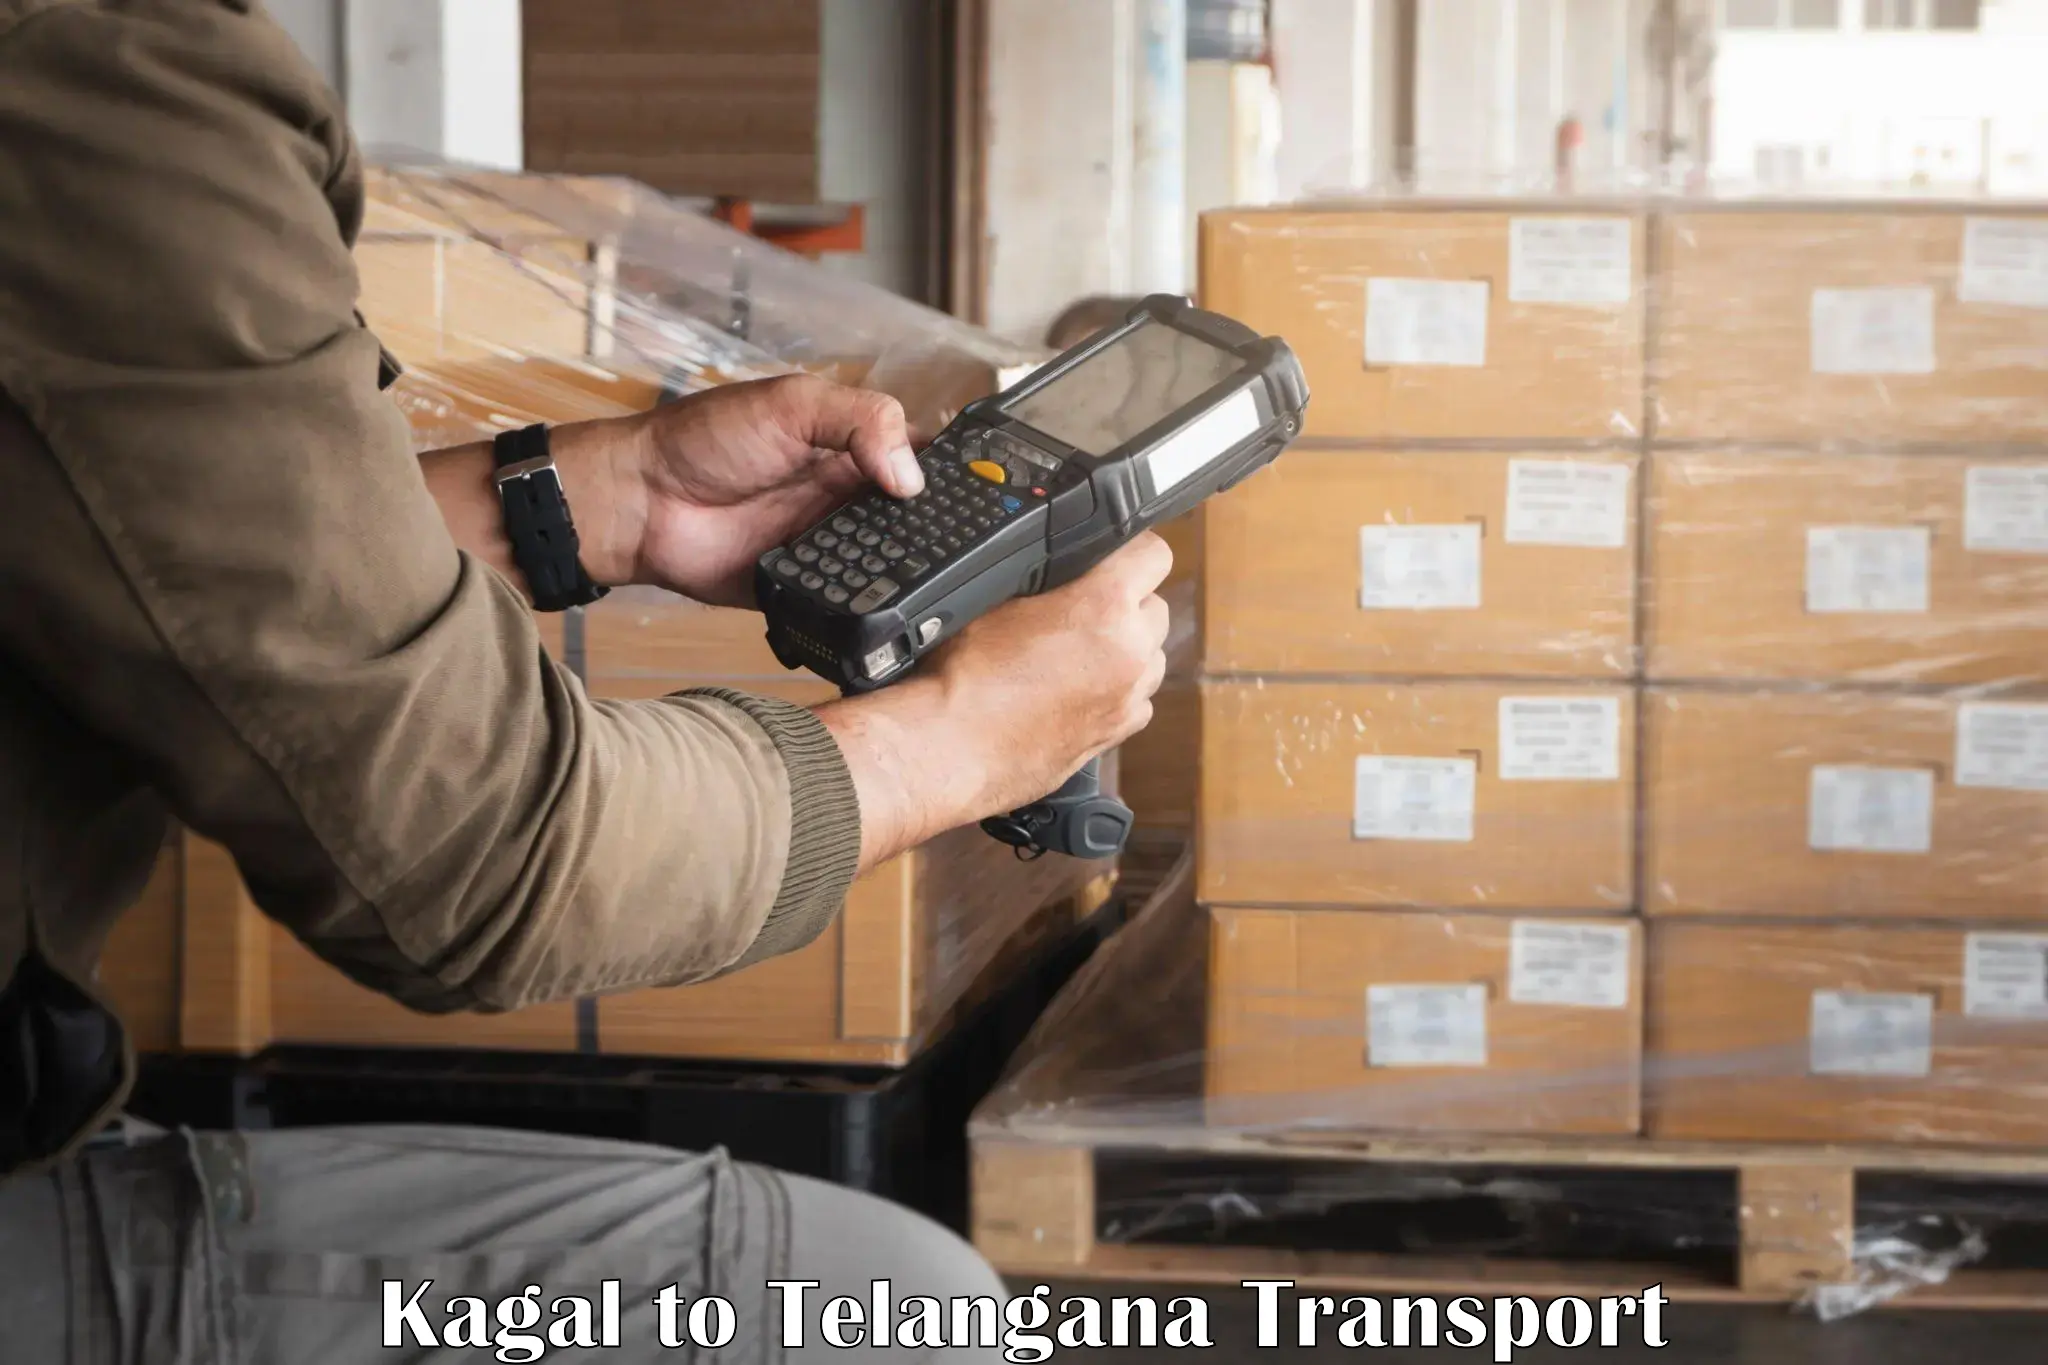 Container transport service Kagal to Sadashivpet